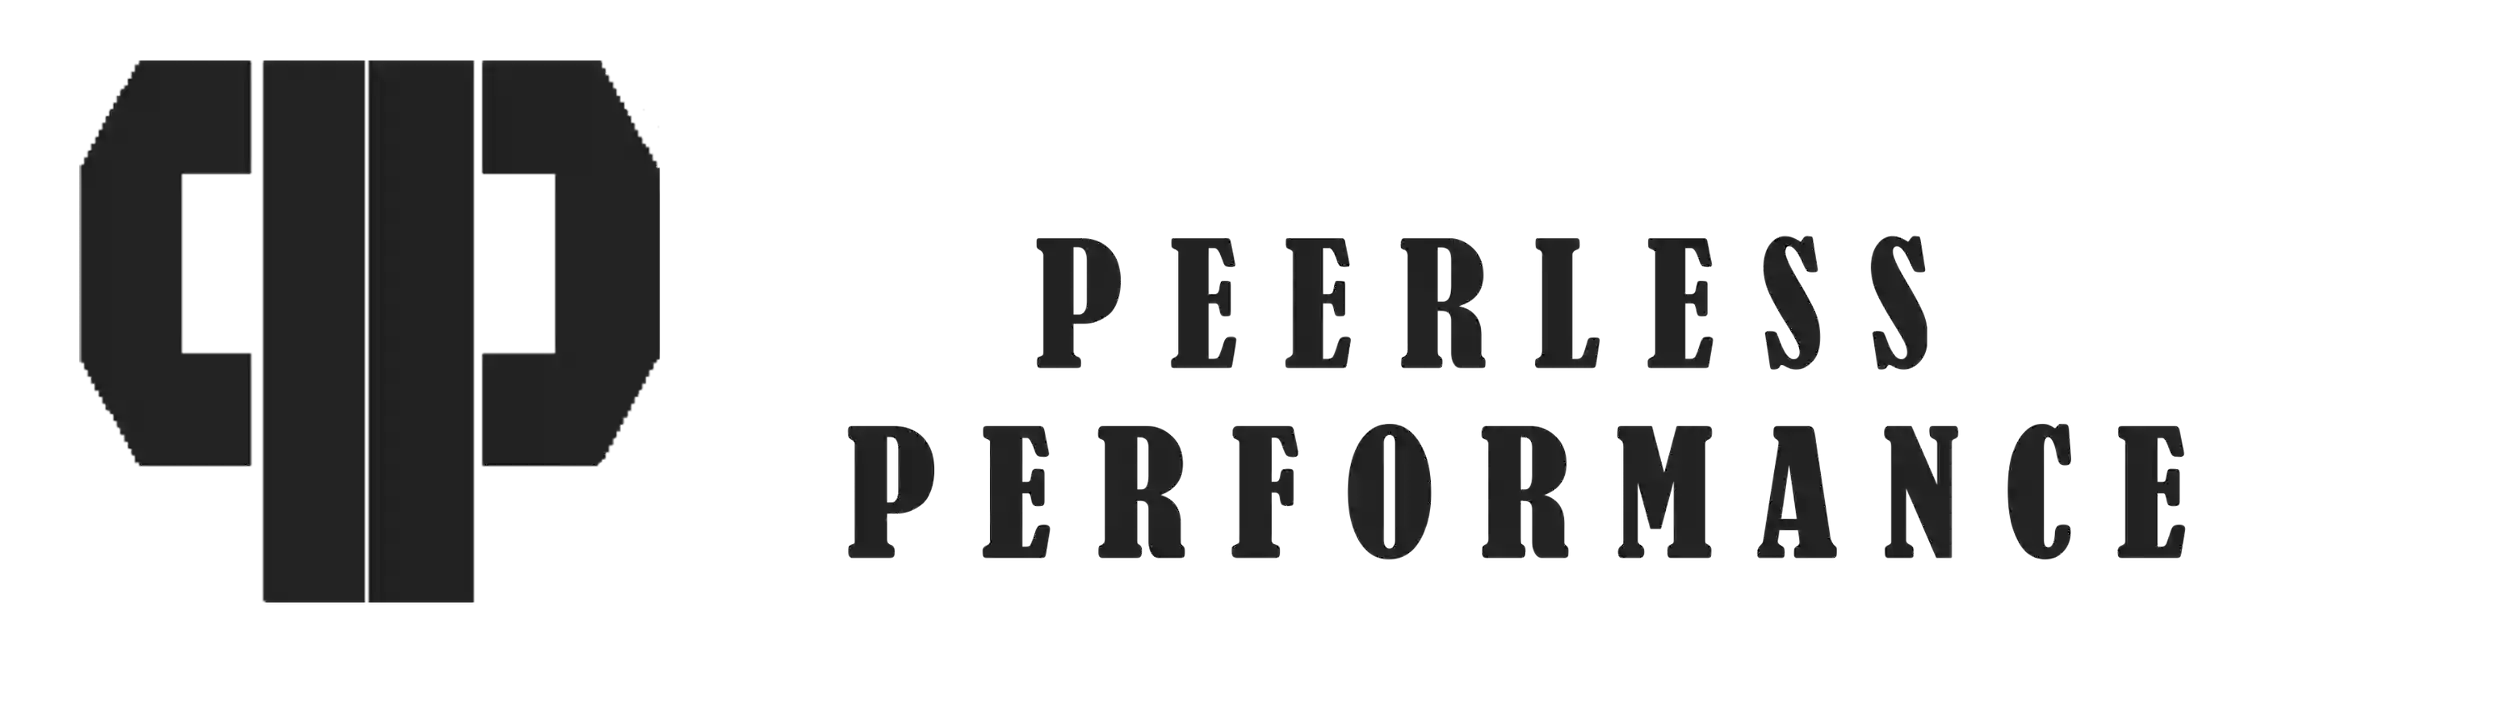 Peerless Performance